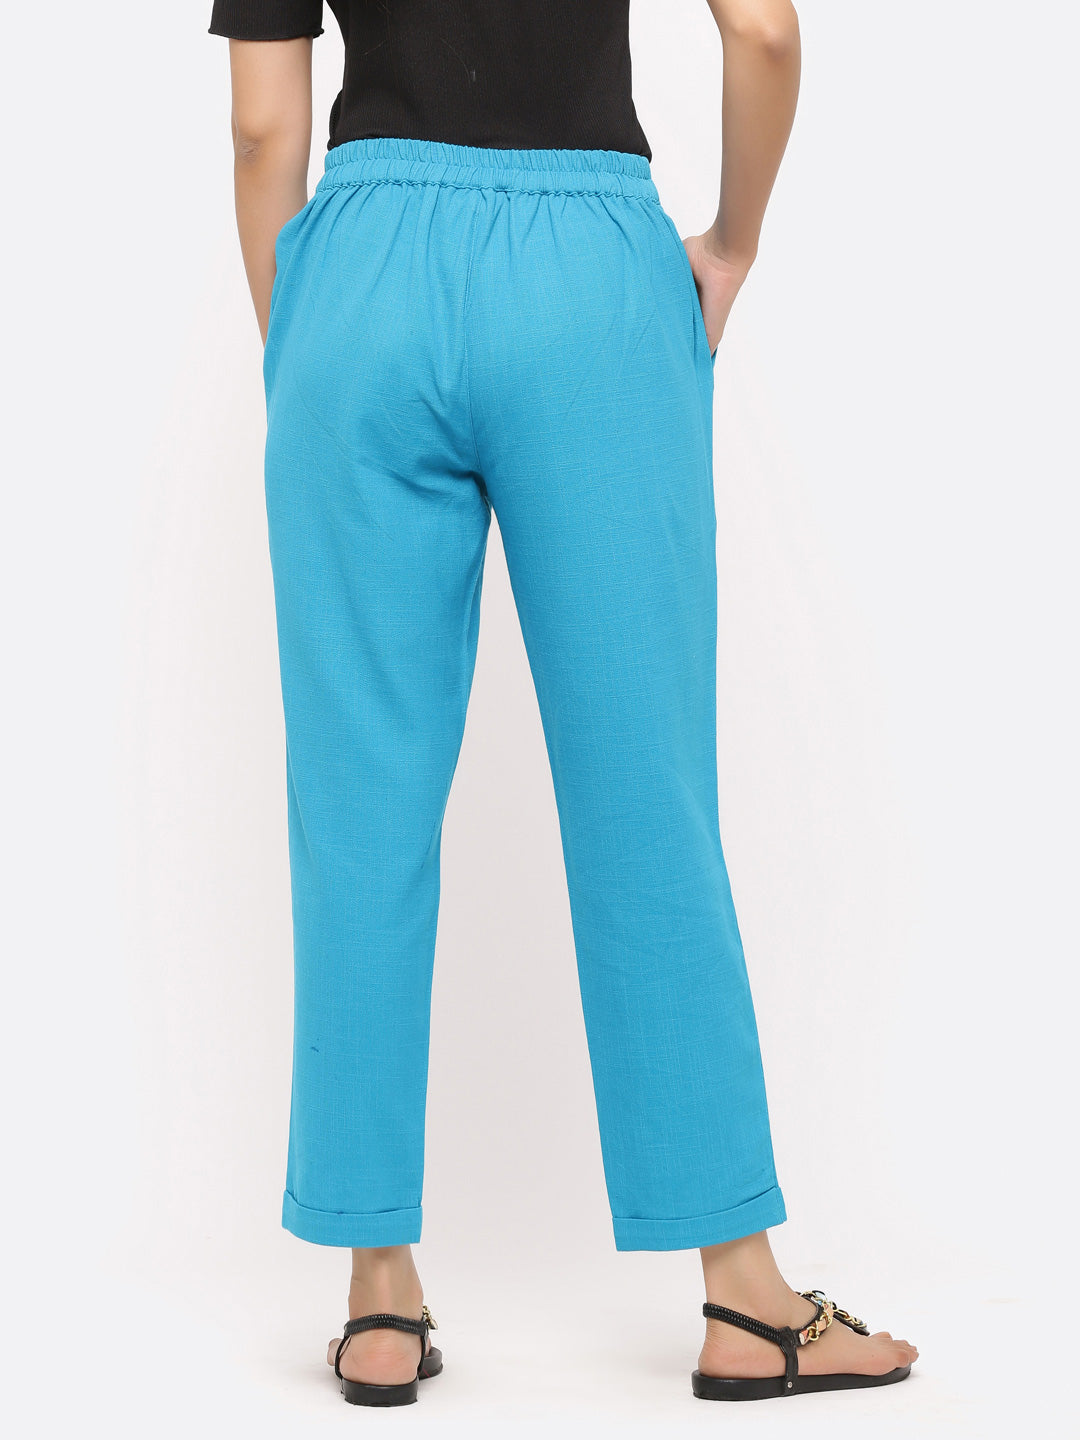 Shop Comfortable pants for women